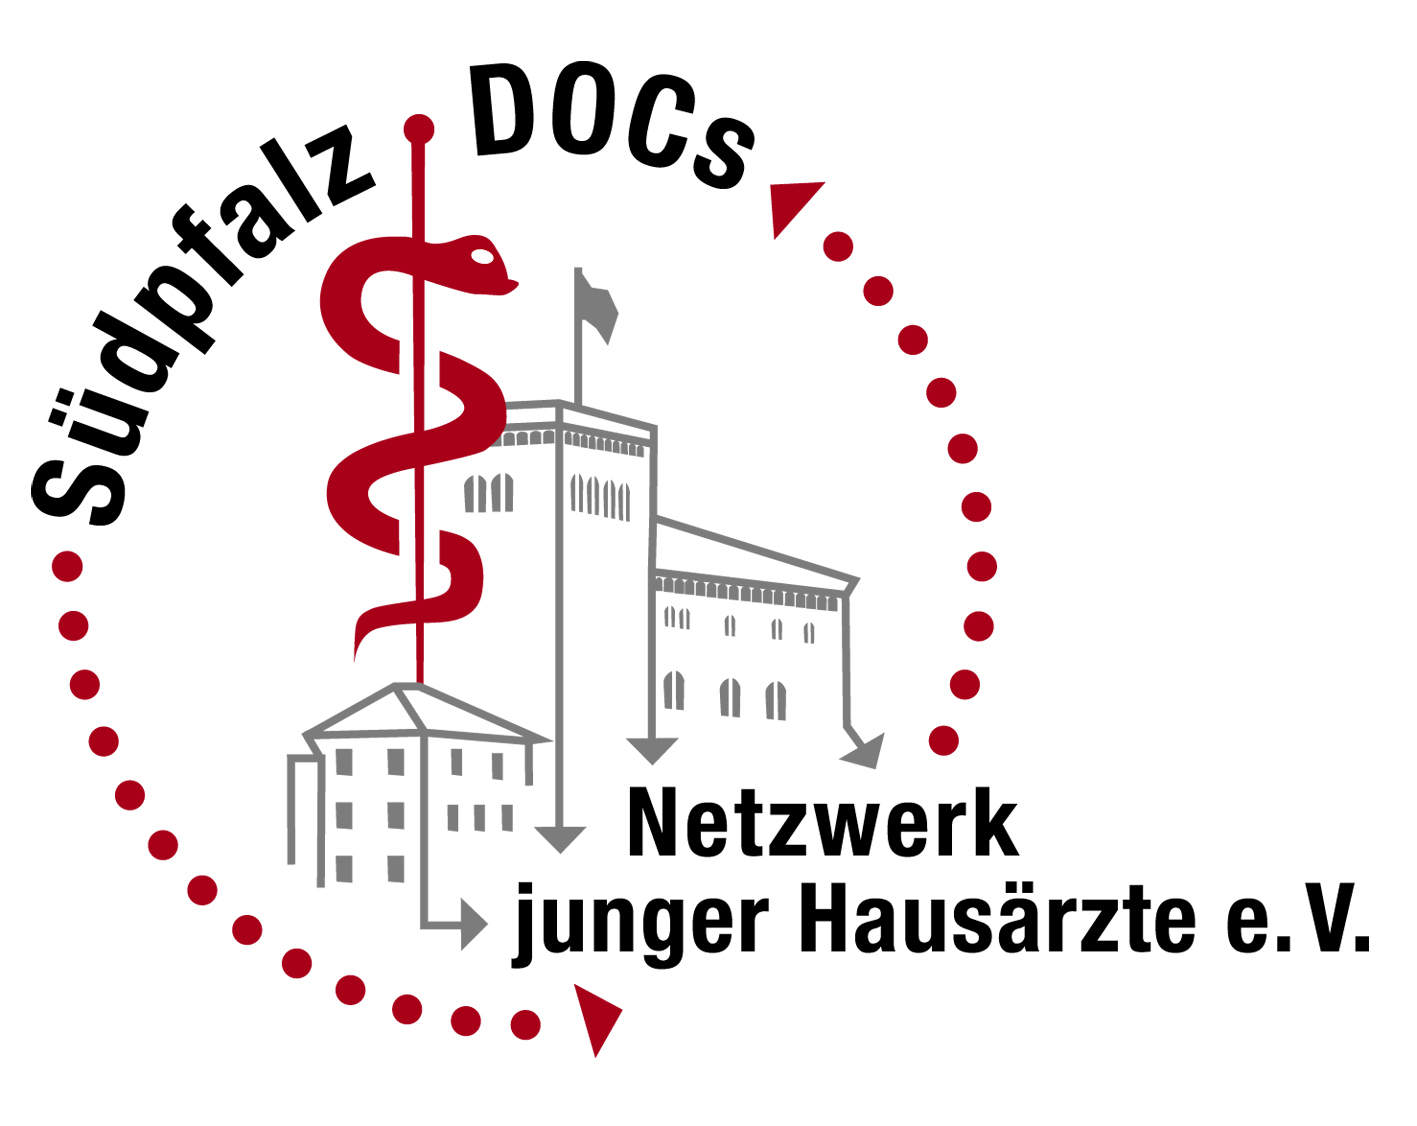 Südpfalz Docs - Netzwerk junger Hausärzte e.V.